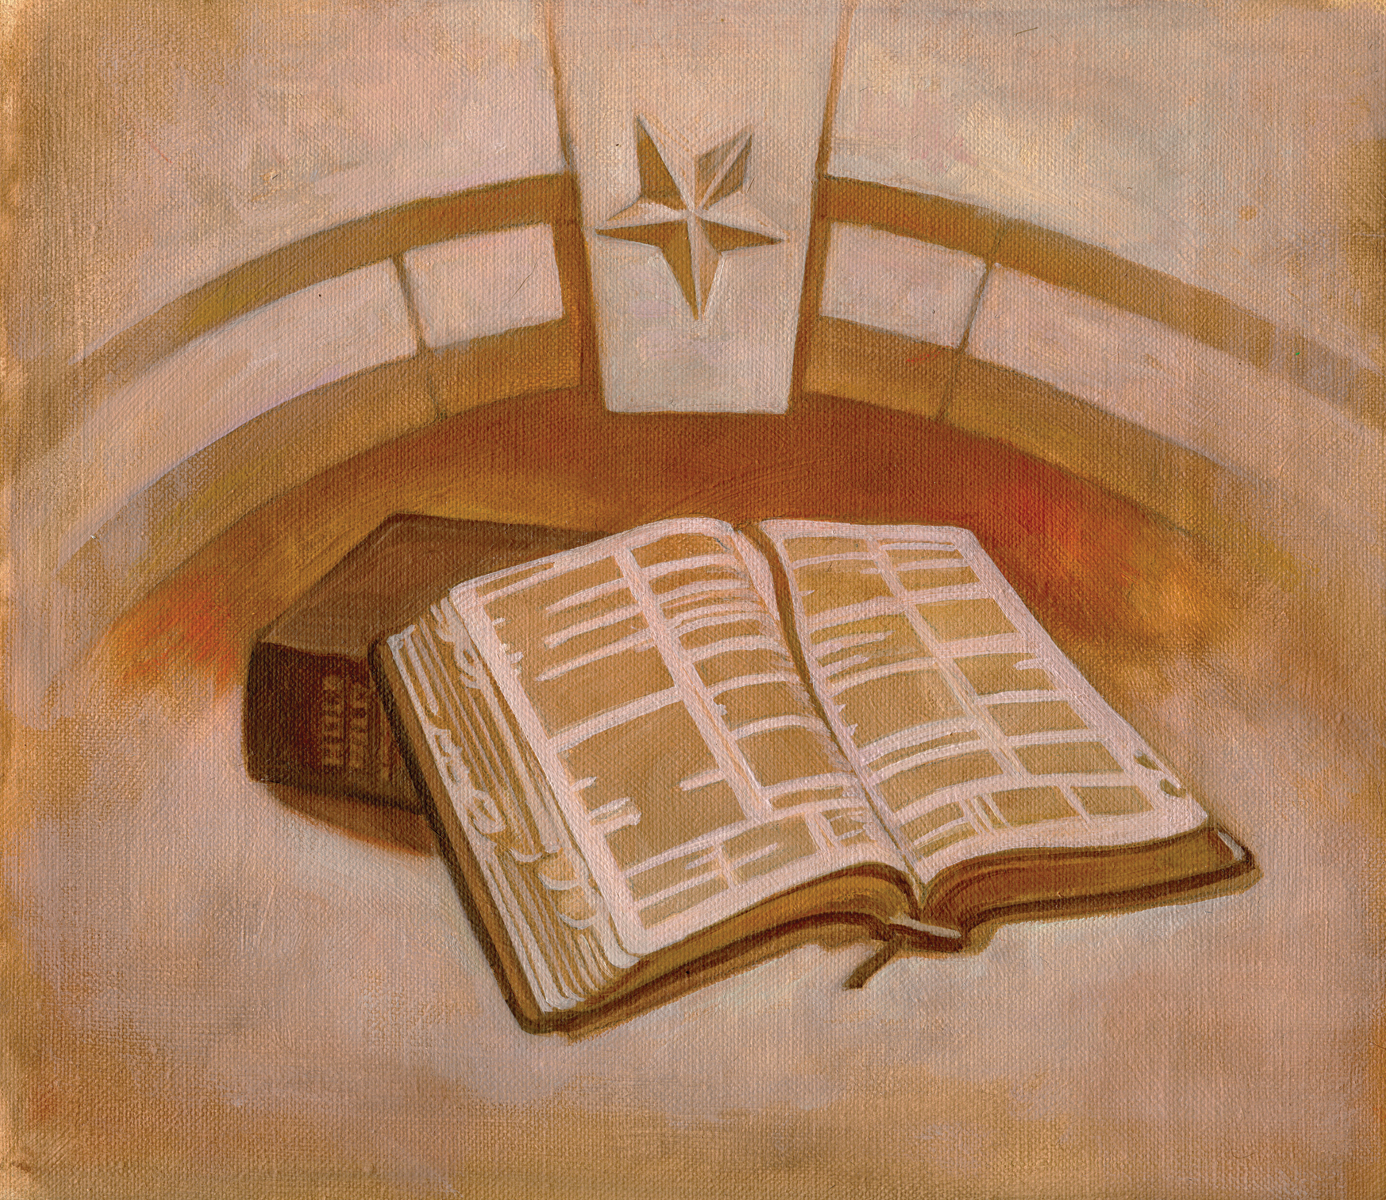 Illustration of scriptures